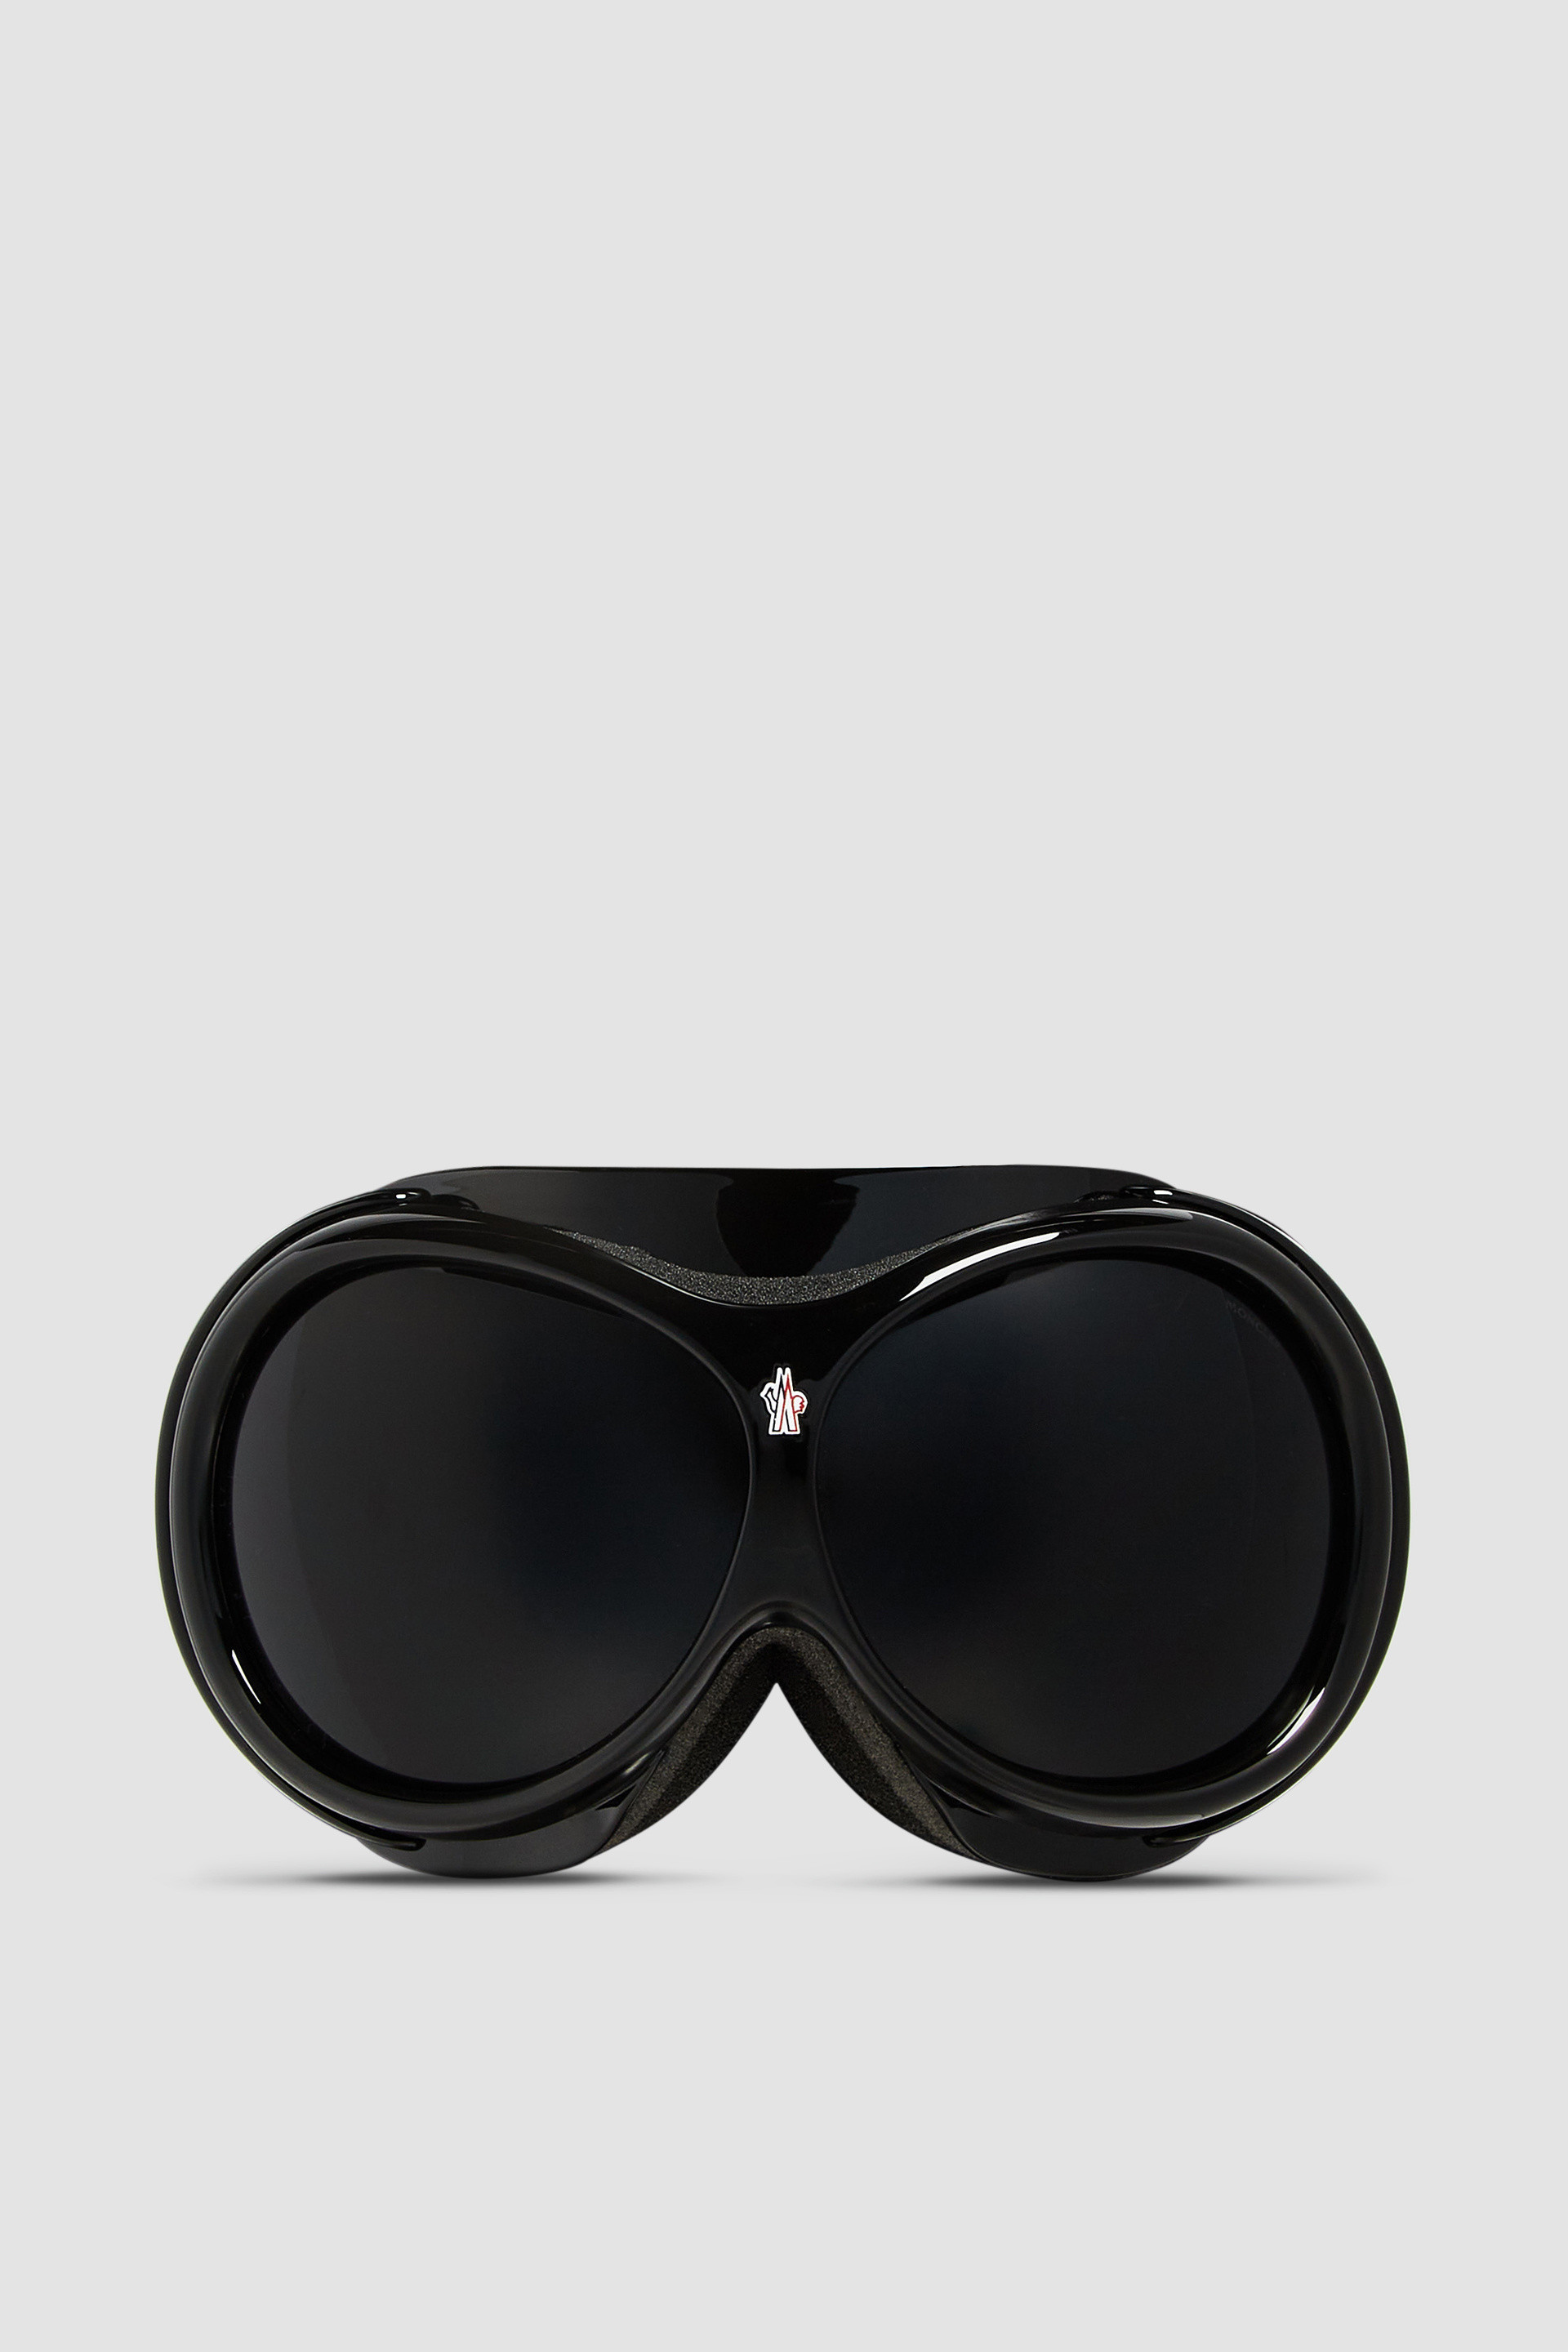 Black Ski Goggles - Sunglasses for Men